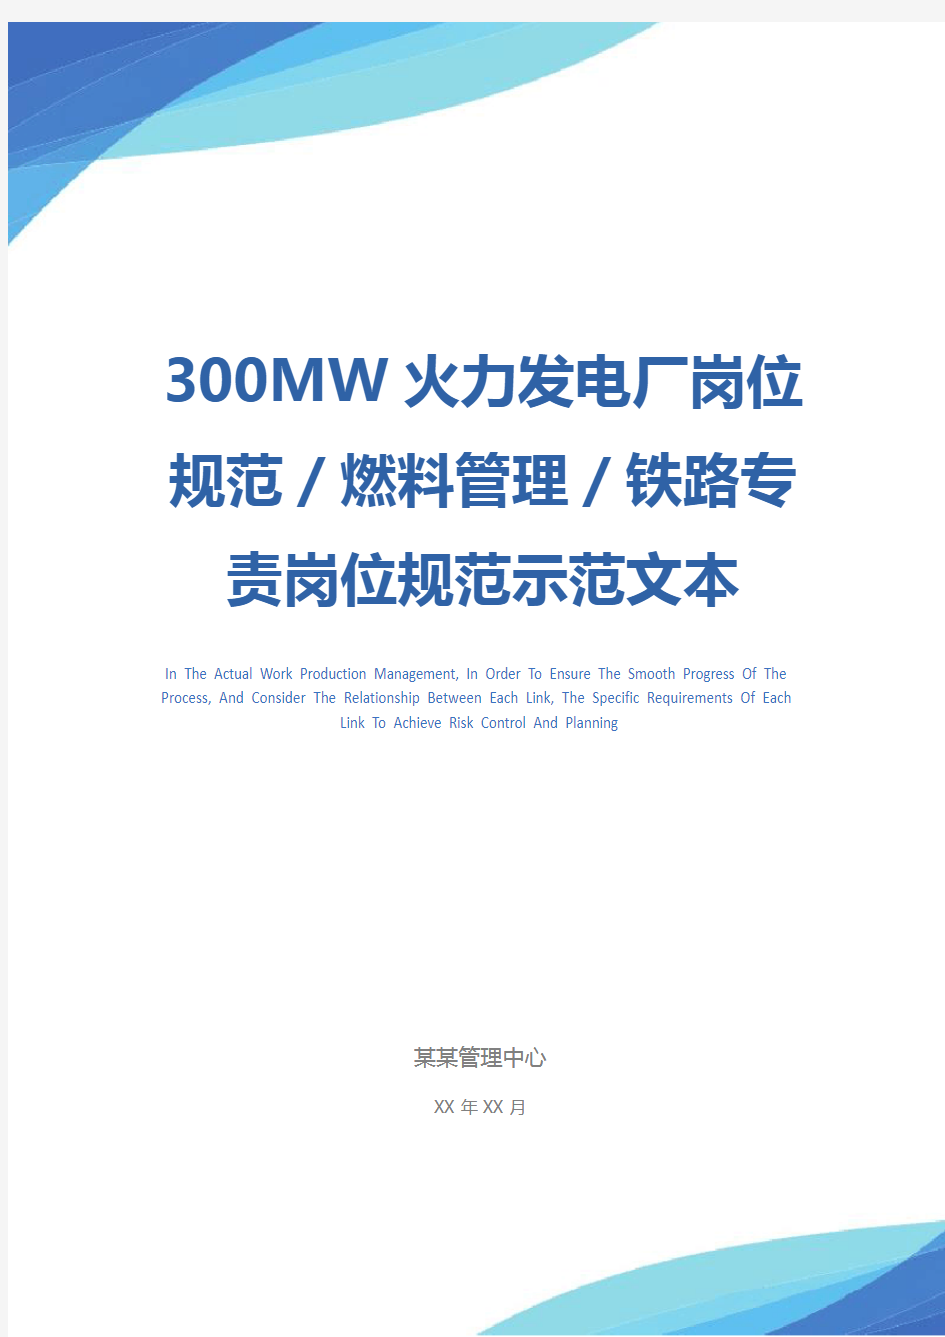 300MW火力发电厂岗位规范／燃料管理／铁路专责岗位规范示范文本